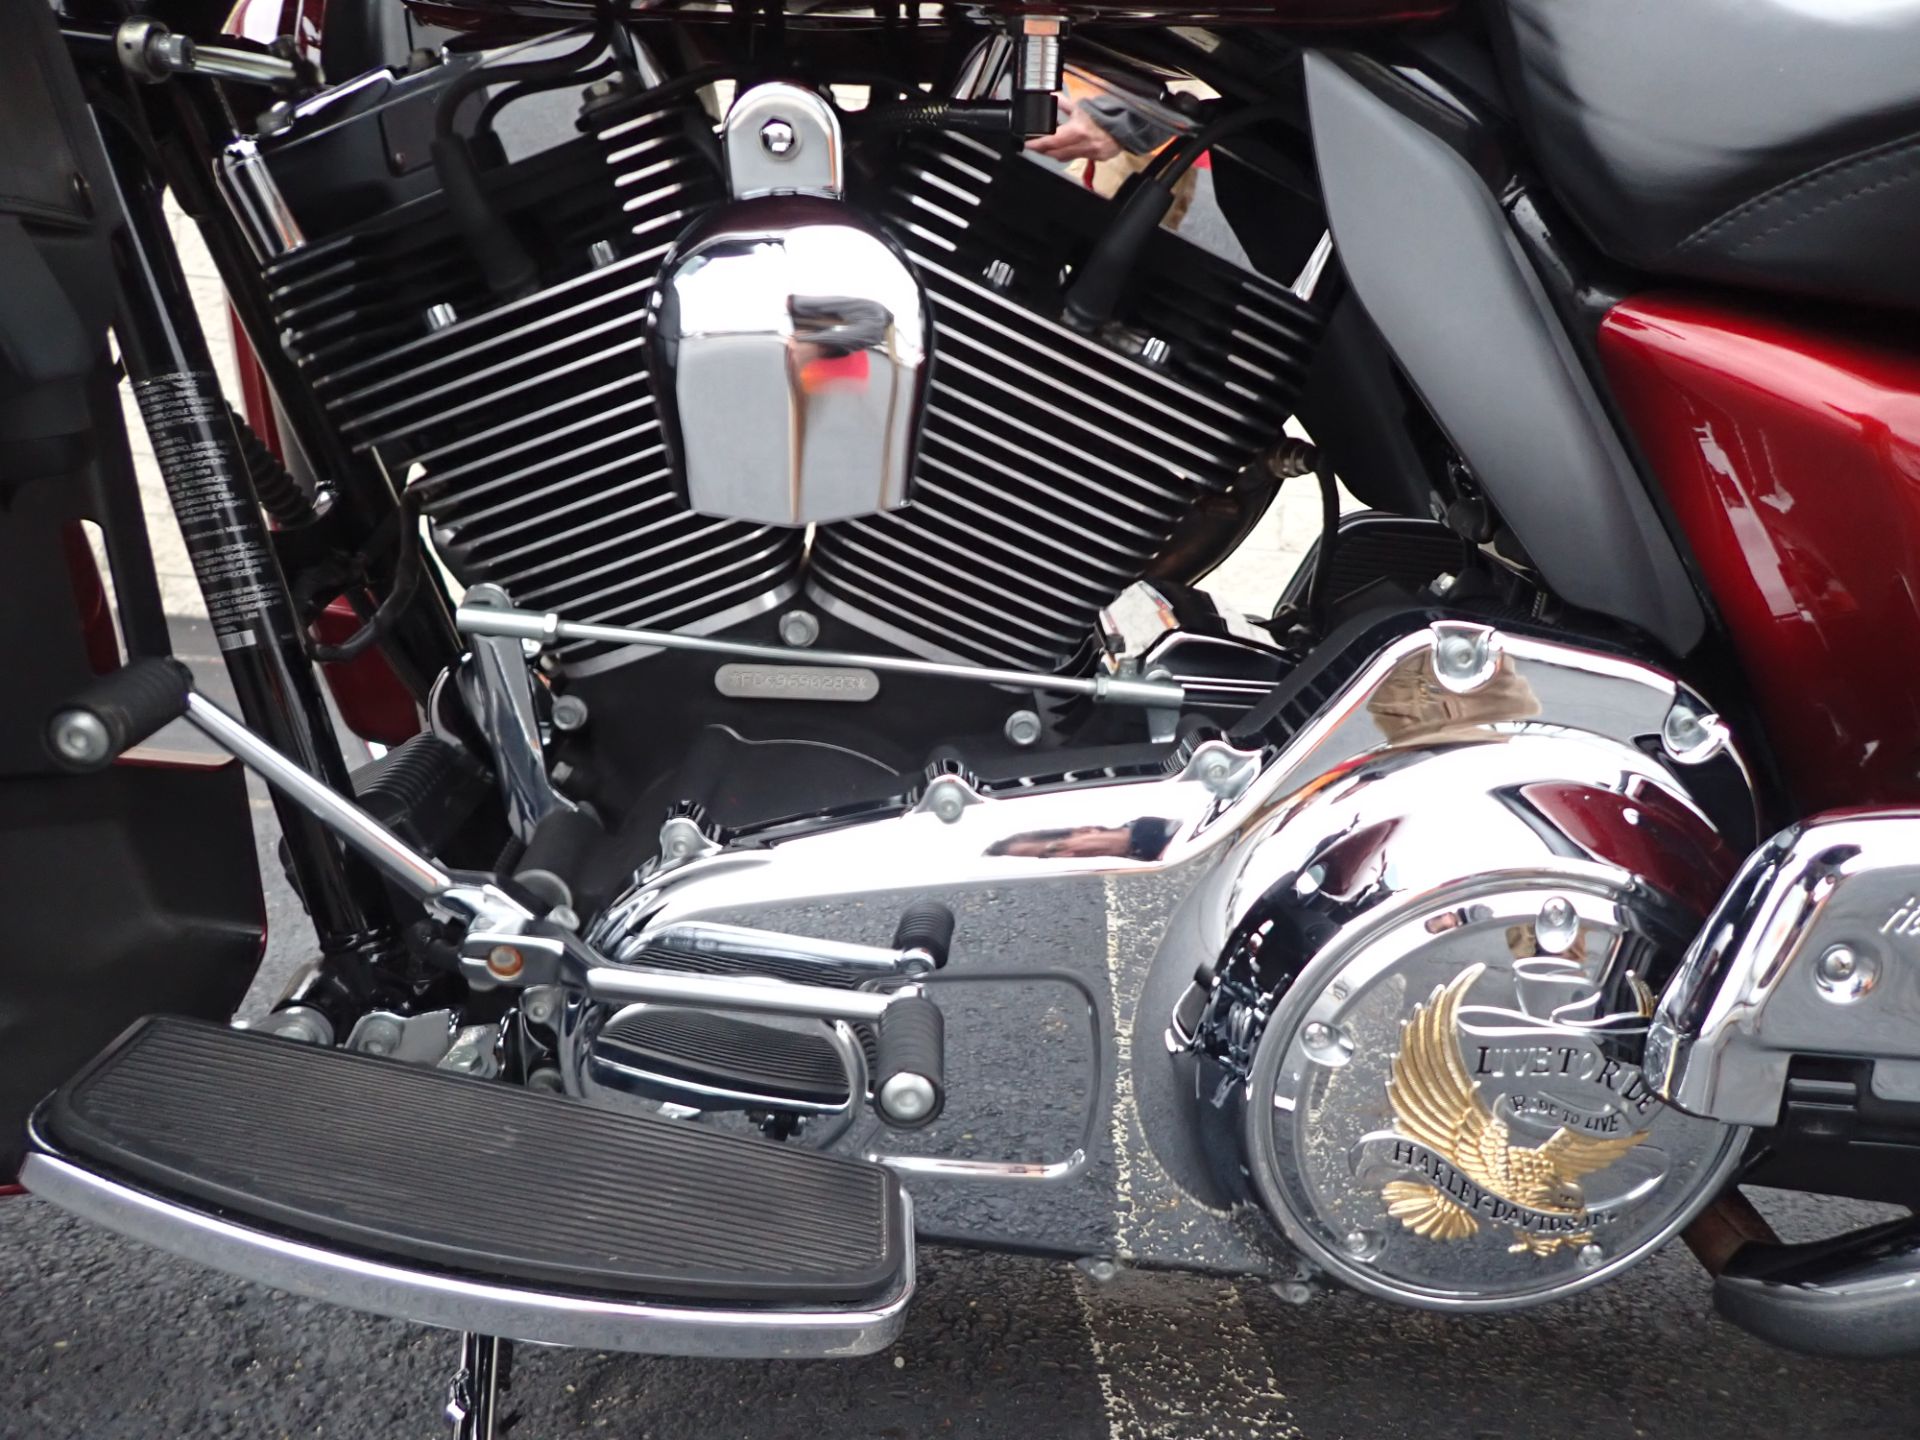 2009 Harley-Davidson Ultra Classic® Electra Glide® in Massillon, Ohio - Photo 8